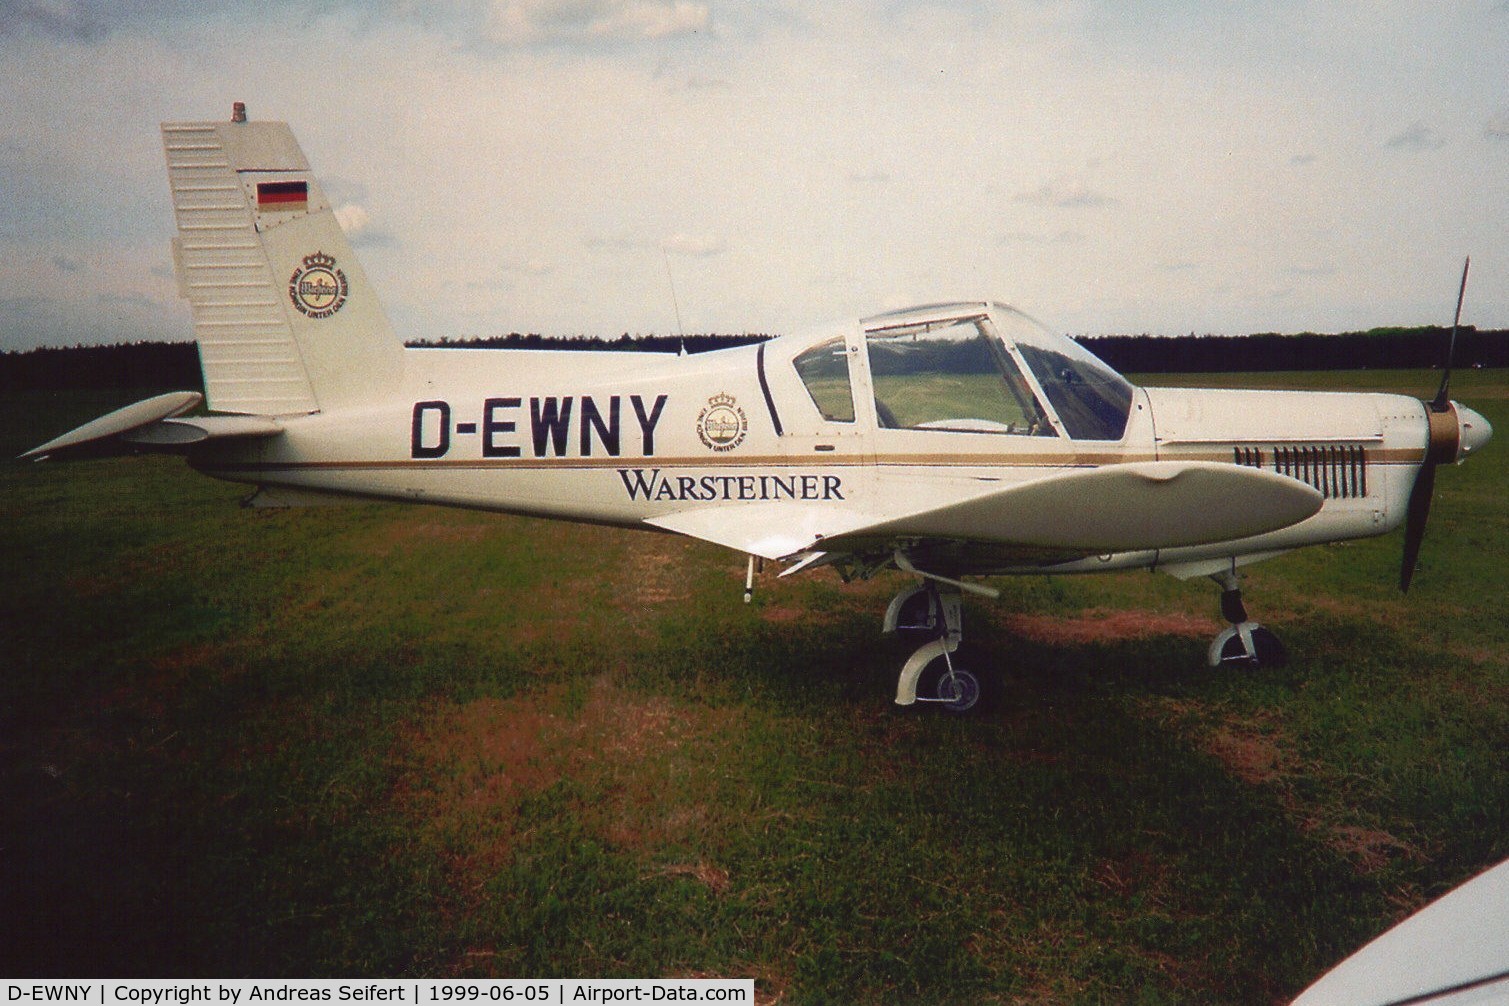 D-EWNY, Zlín Z-42M C/N 0067, das Foto wurde 5.6.1999 in Schwarzheide gemacht.die Maschine stürzte am 30.10.2010 in ein Wohngebiet
(2 Tote)